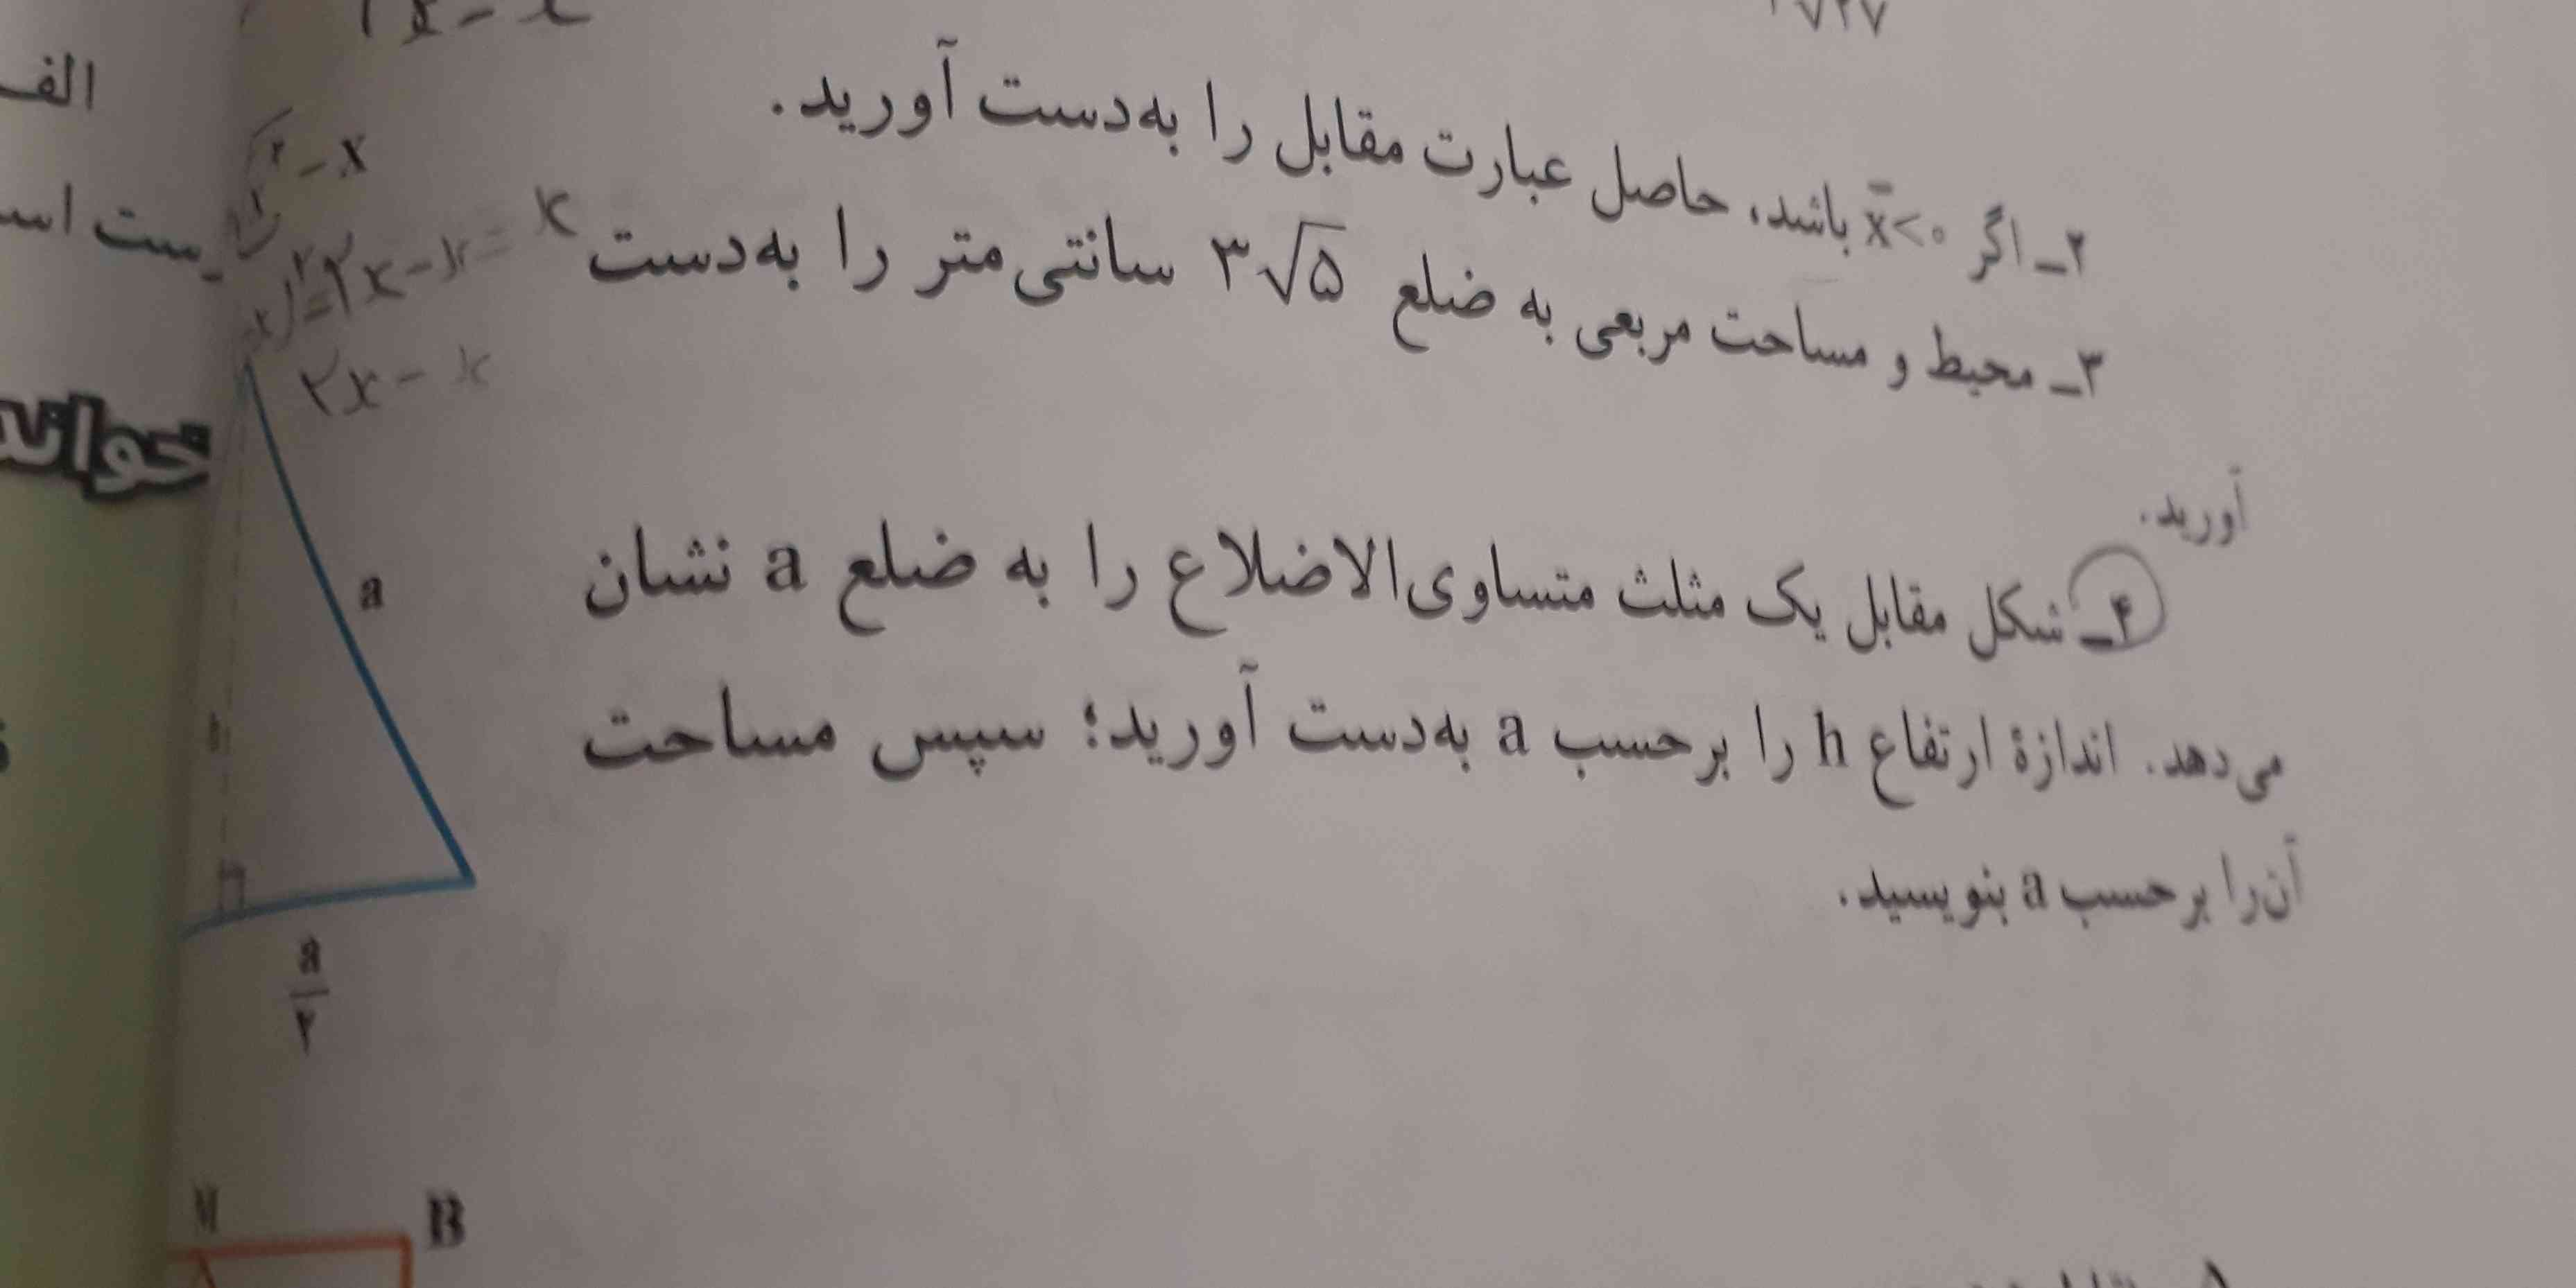 نمونه سوال عربی کل کتاب

